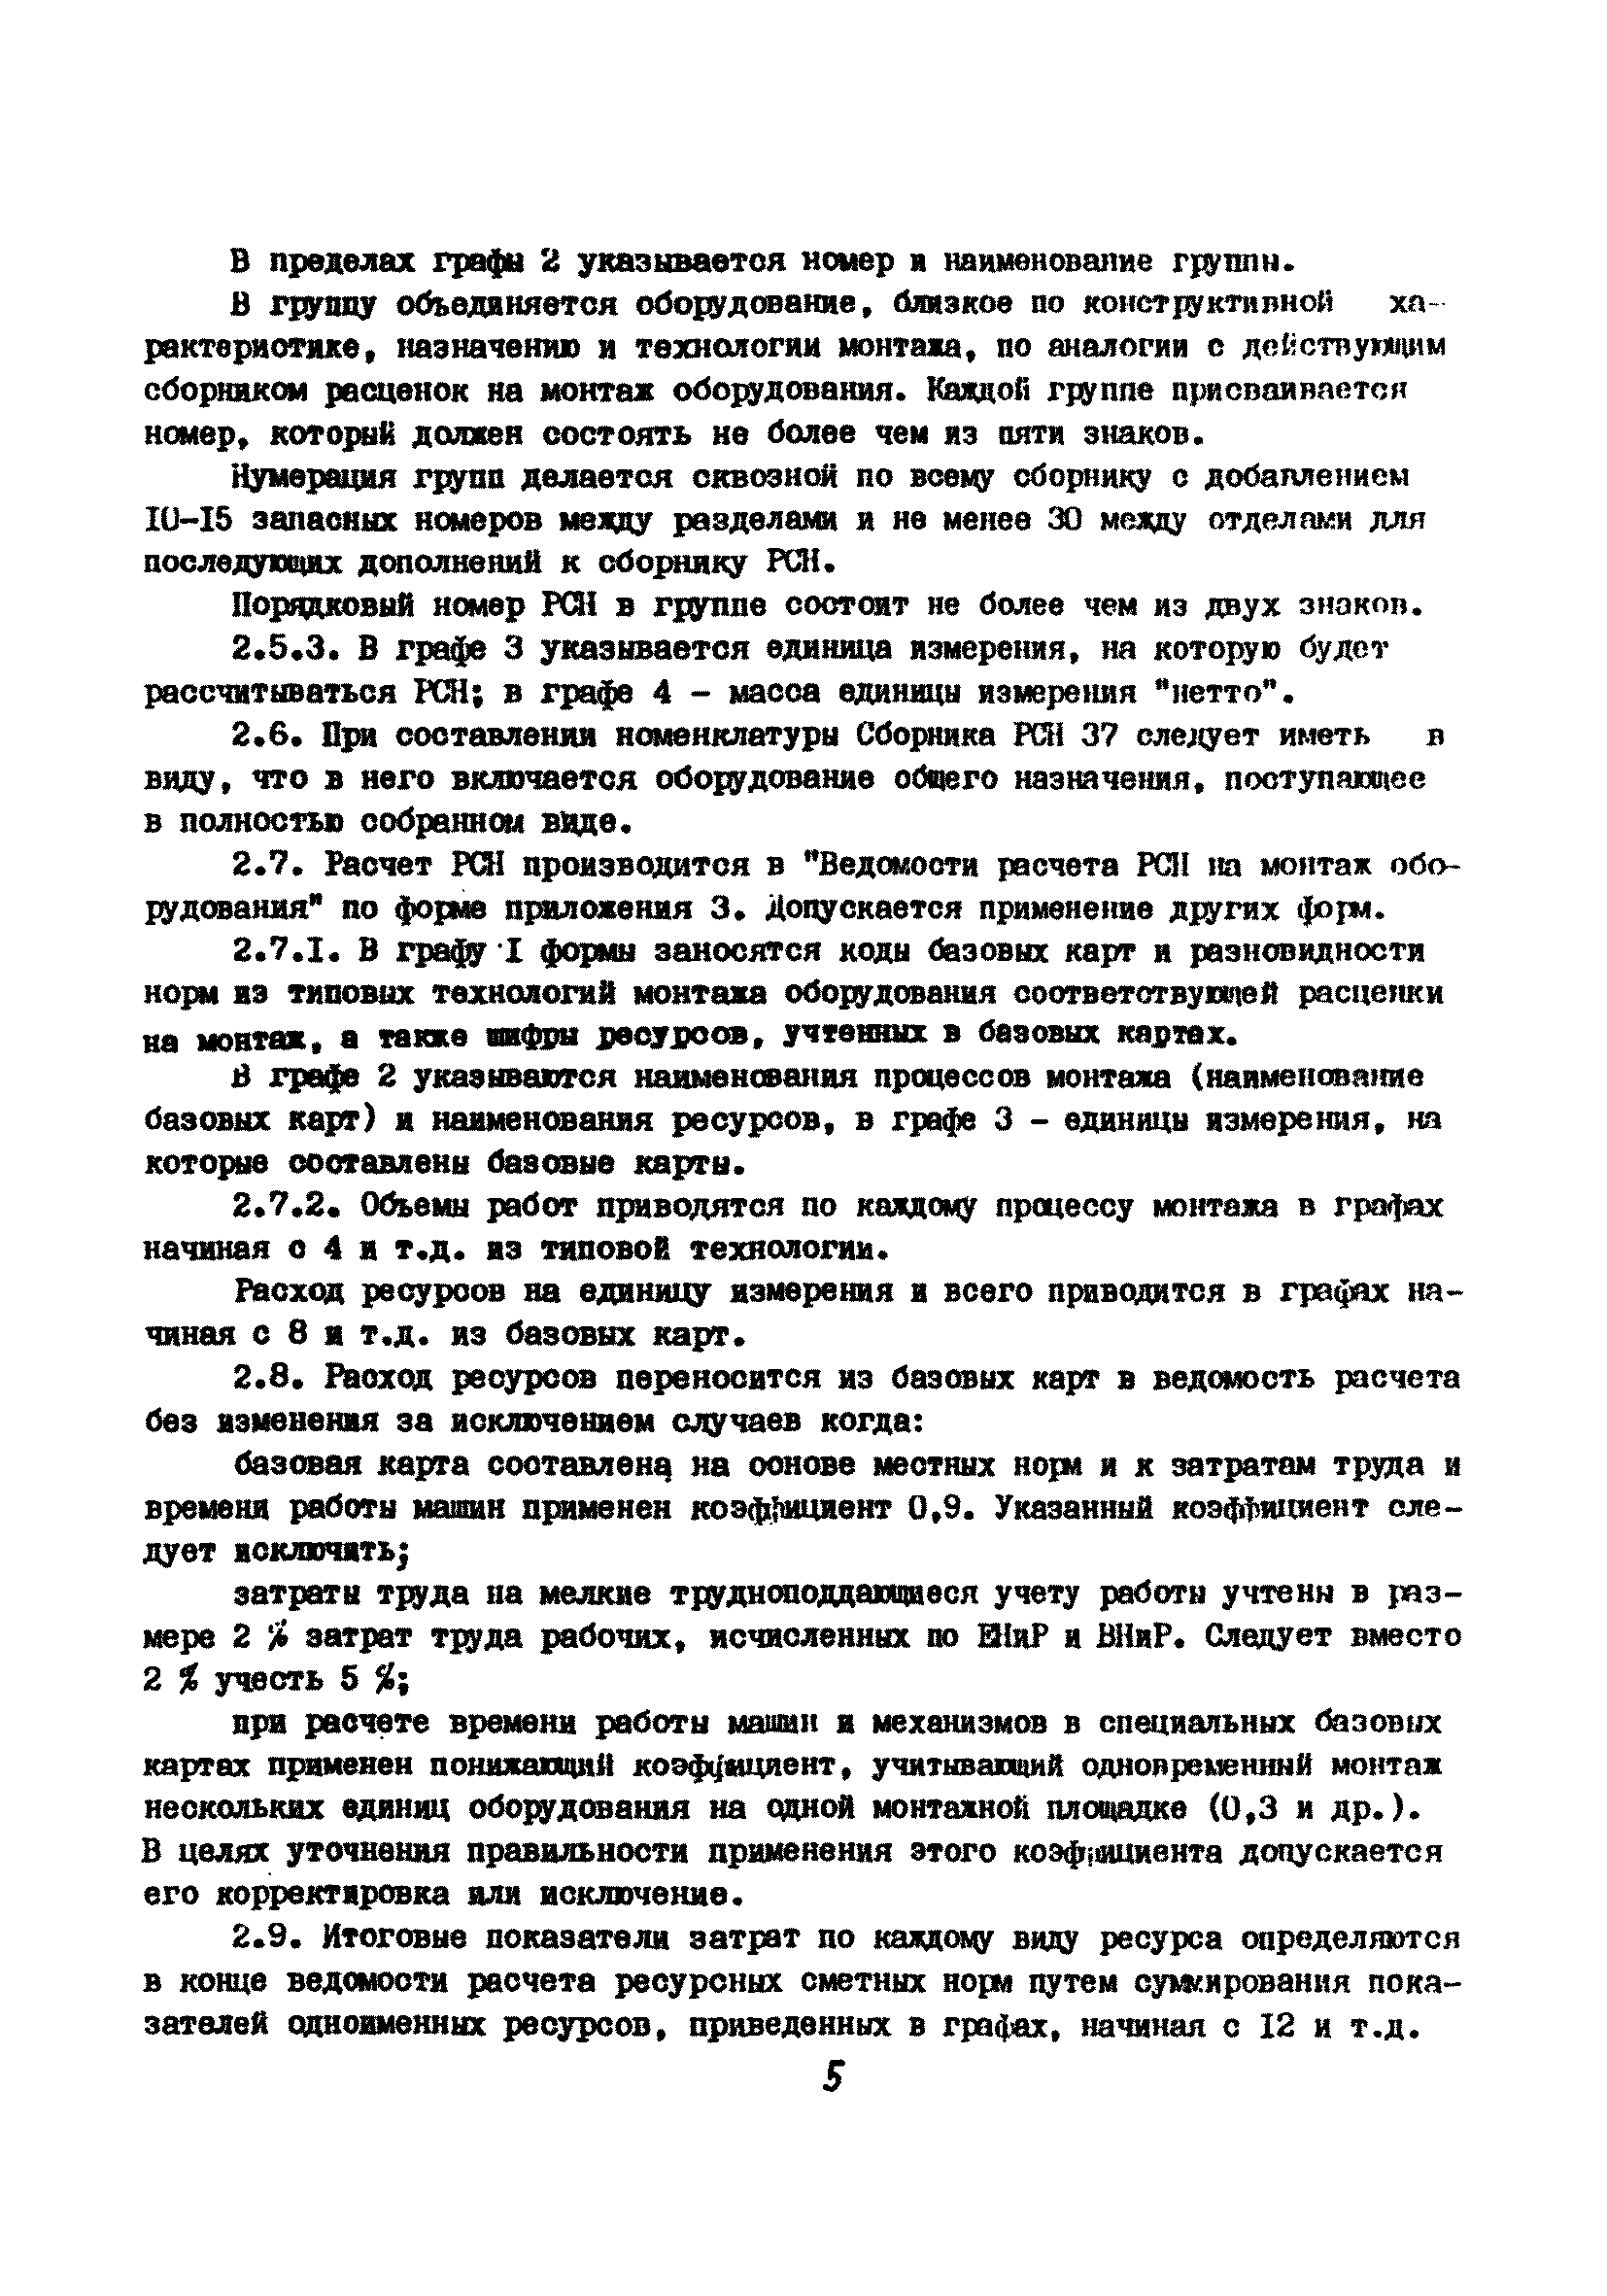 МДС 81-13.2000